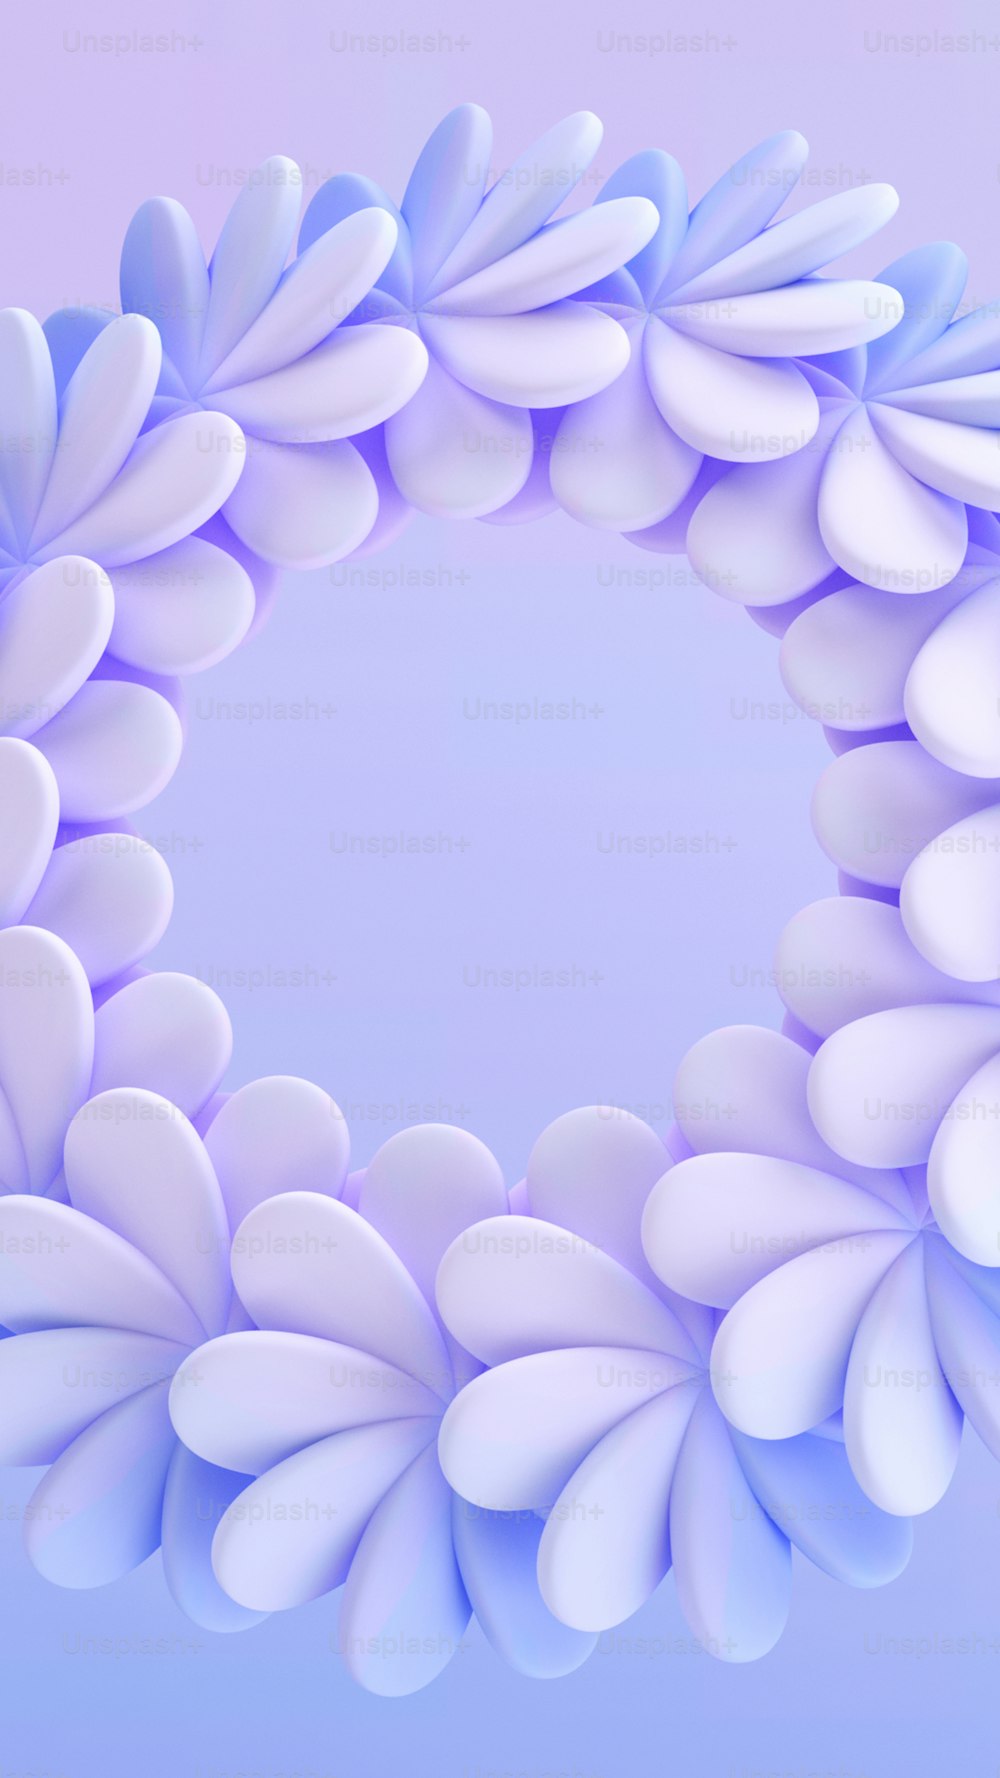 Un objeto circular azul y blanco con pétalos blancos